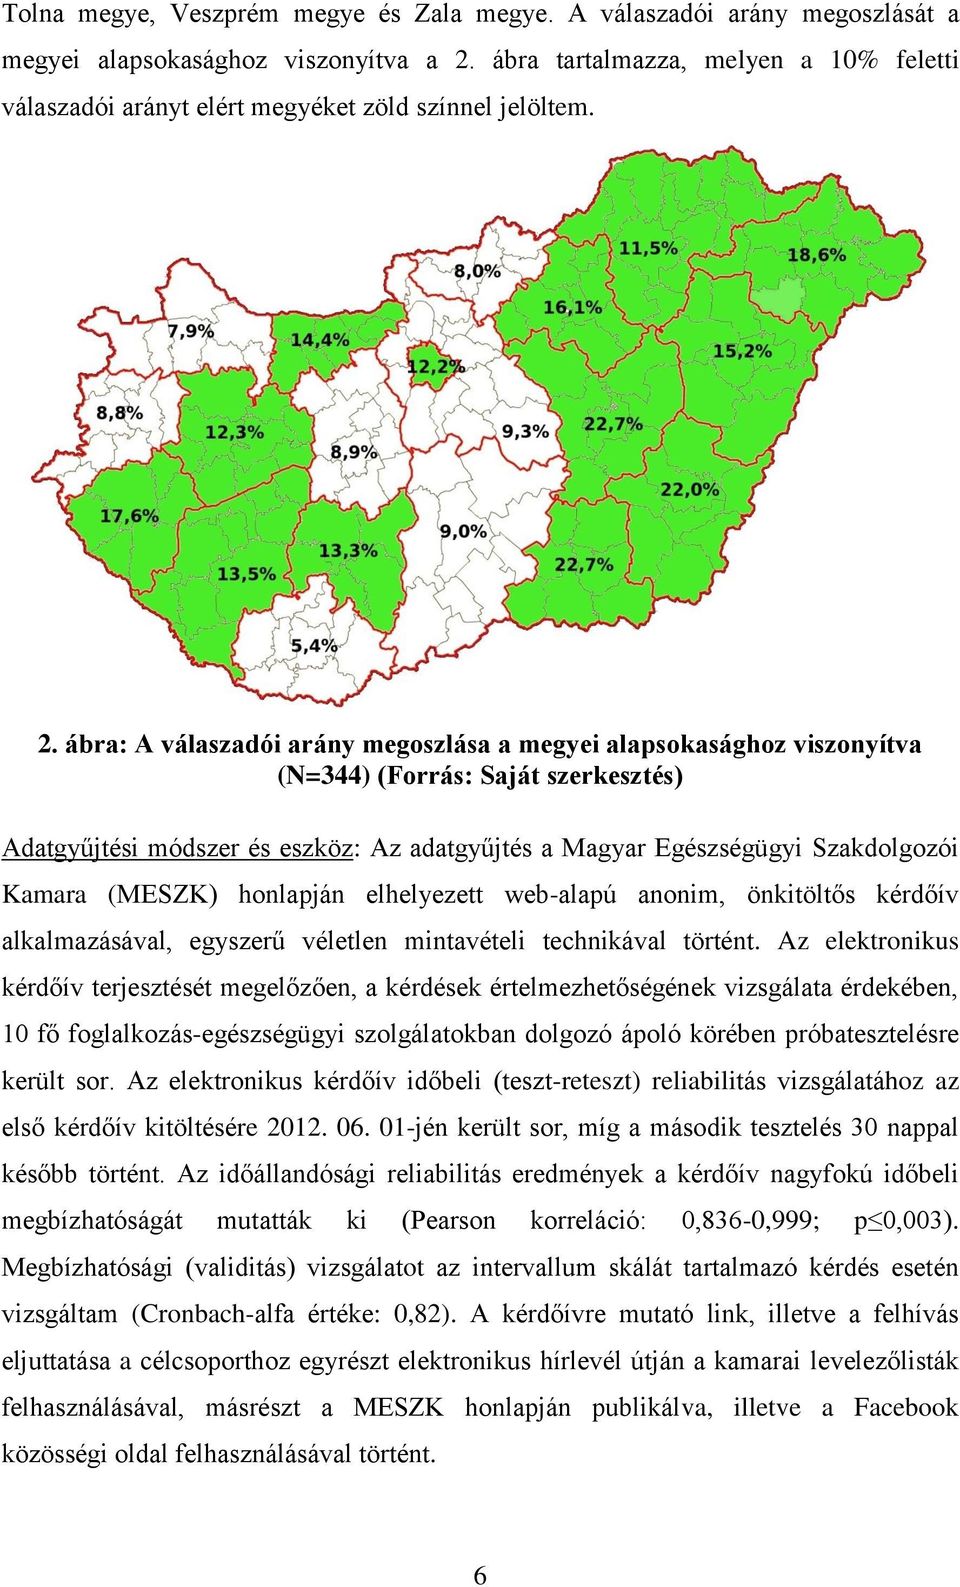 ábra: A válaszadói arány megoszlása a megyei alapsokasághoz viszonyítva (N=344) (Forrás: Saját szerkesztés) Adatgyűjtési módszer és eszköz: Az adatgyűjtés a Magyar Egészségügyi Szakdolgozói Kamara